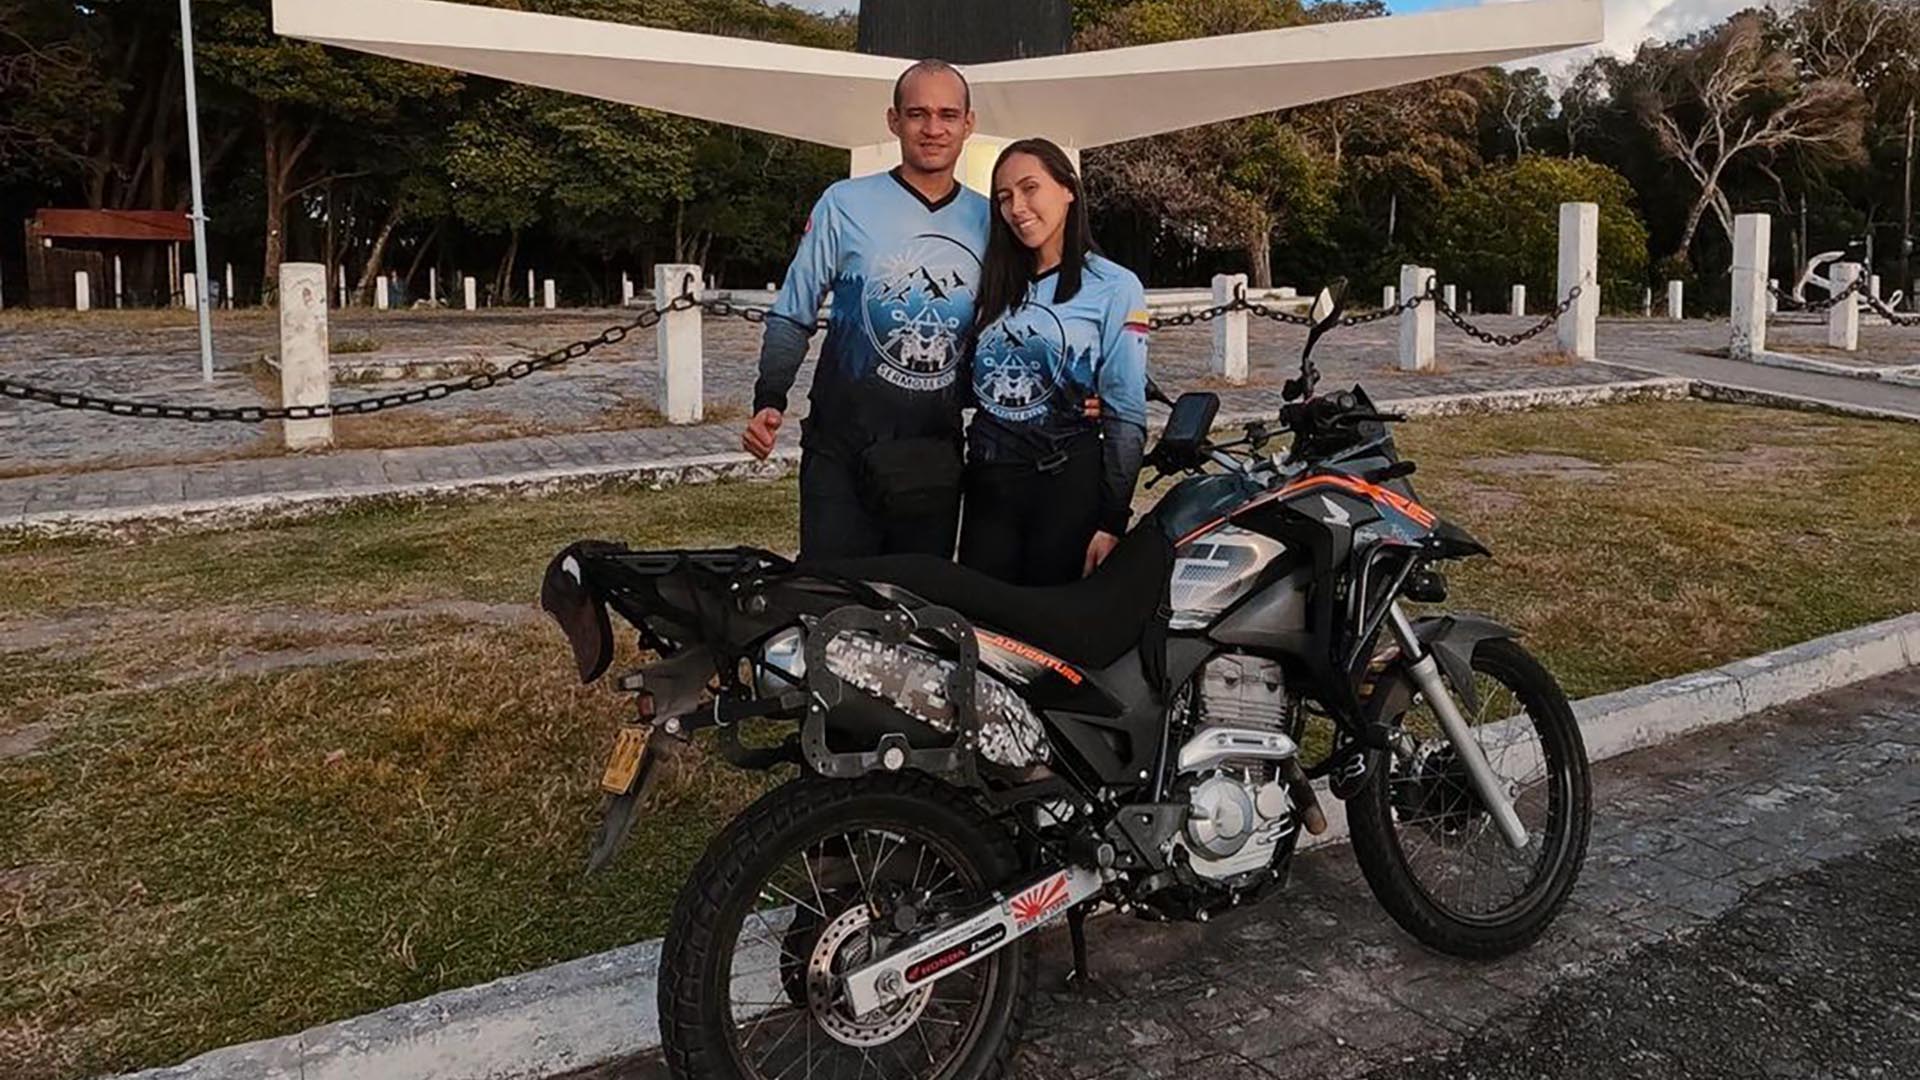 Horas después de ingresar al país, le robaron la moto en la Panamericana a  una pareja colombiana que viajaba por Sudamérica - Infobae